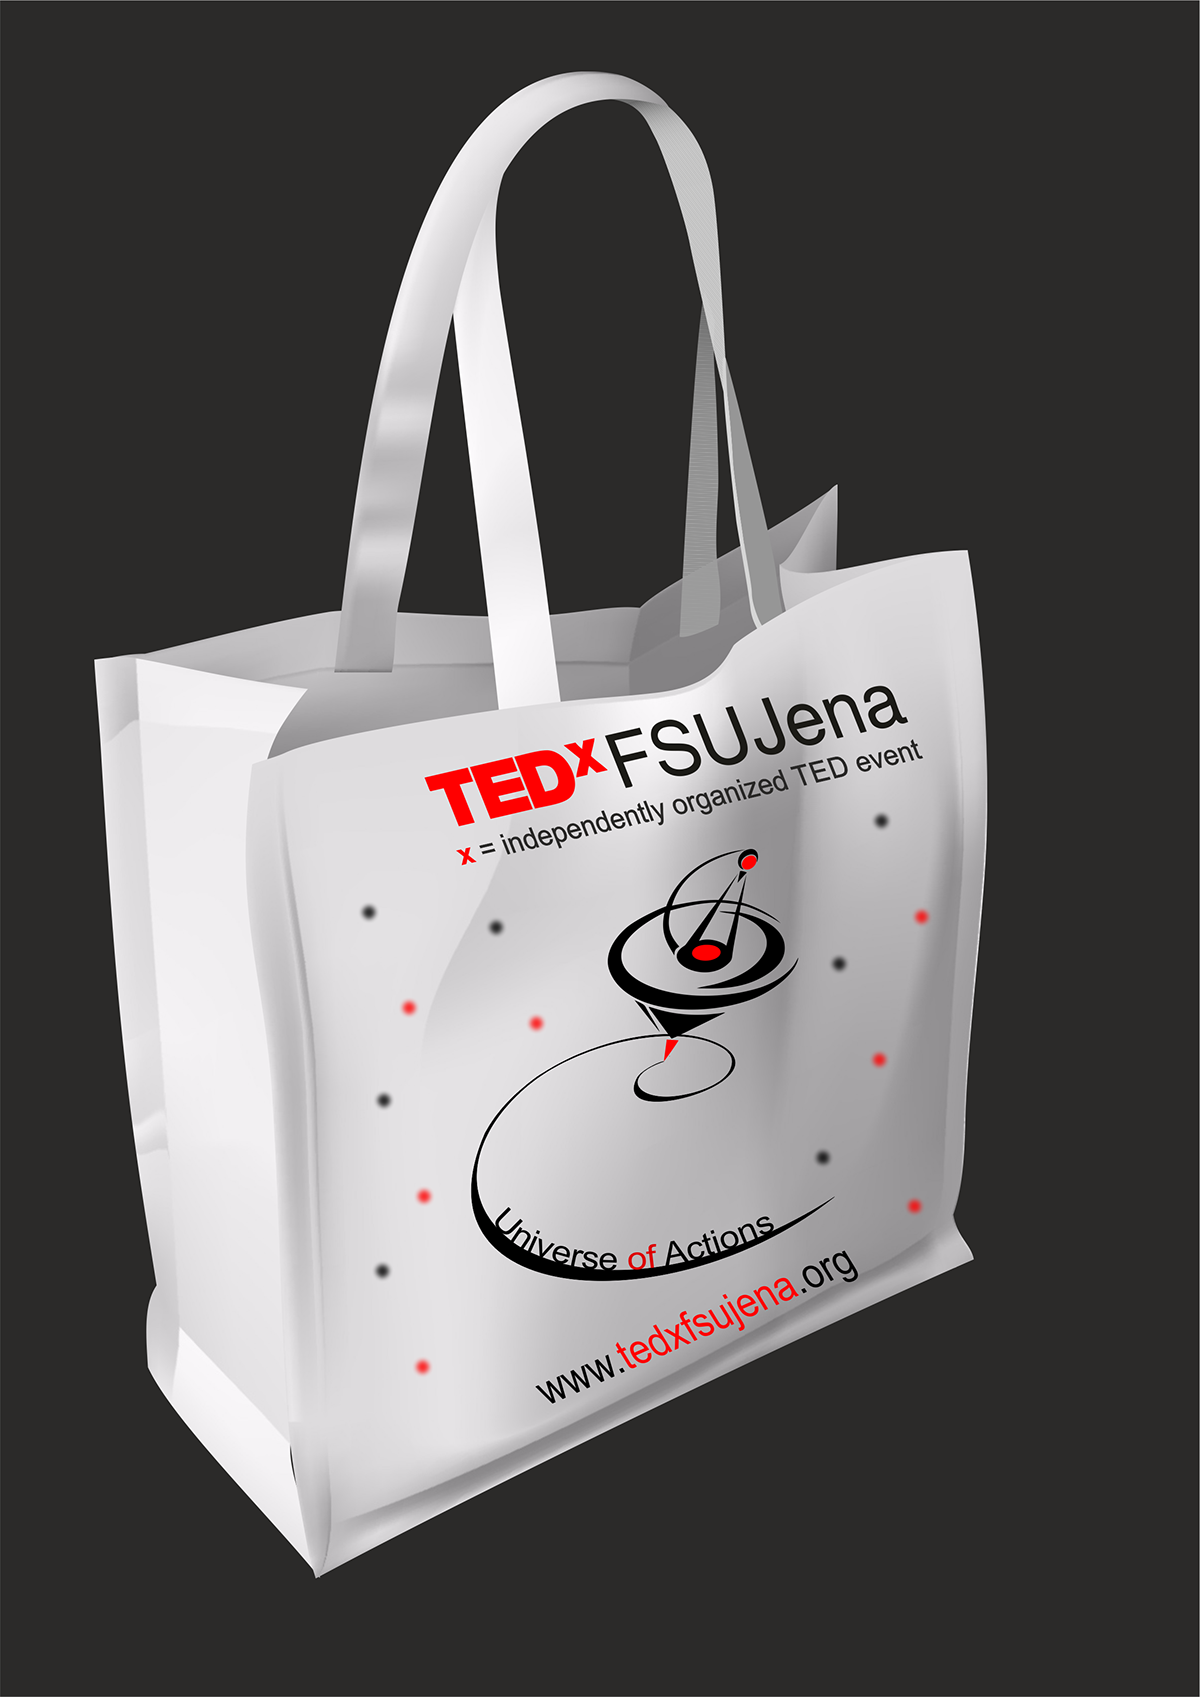 #tedxfsujena #jena #TEDx  #fsujena #Logo #motivation #Action